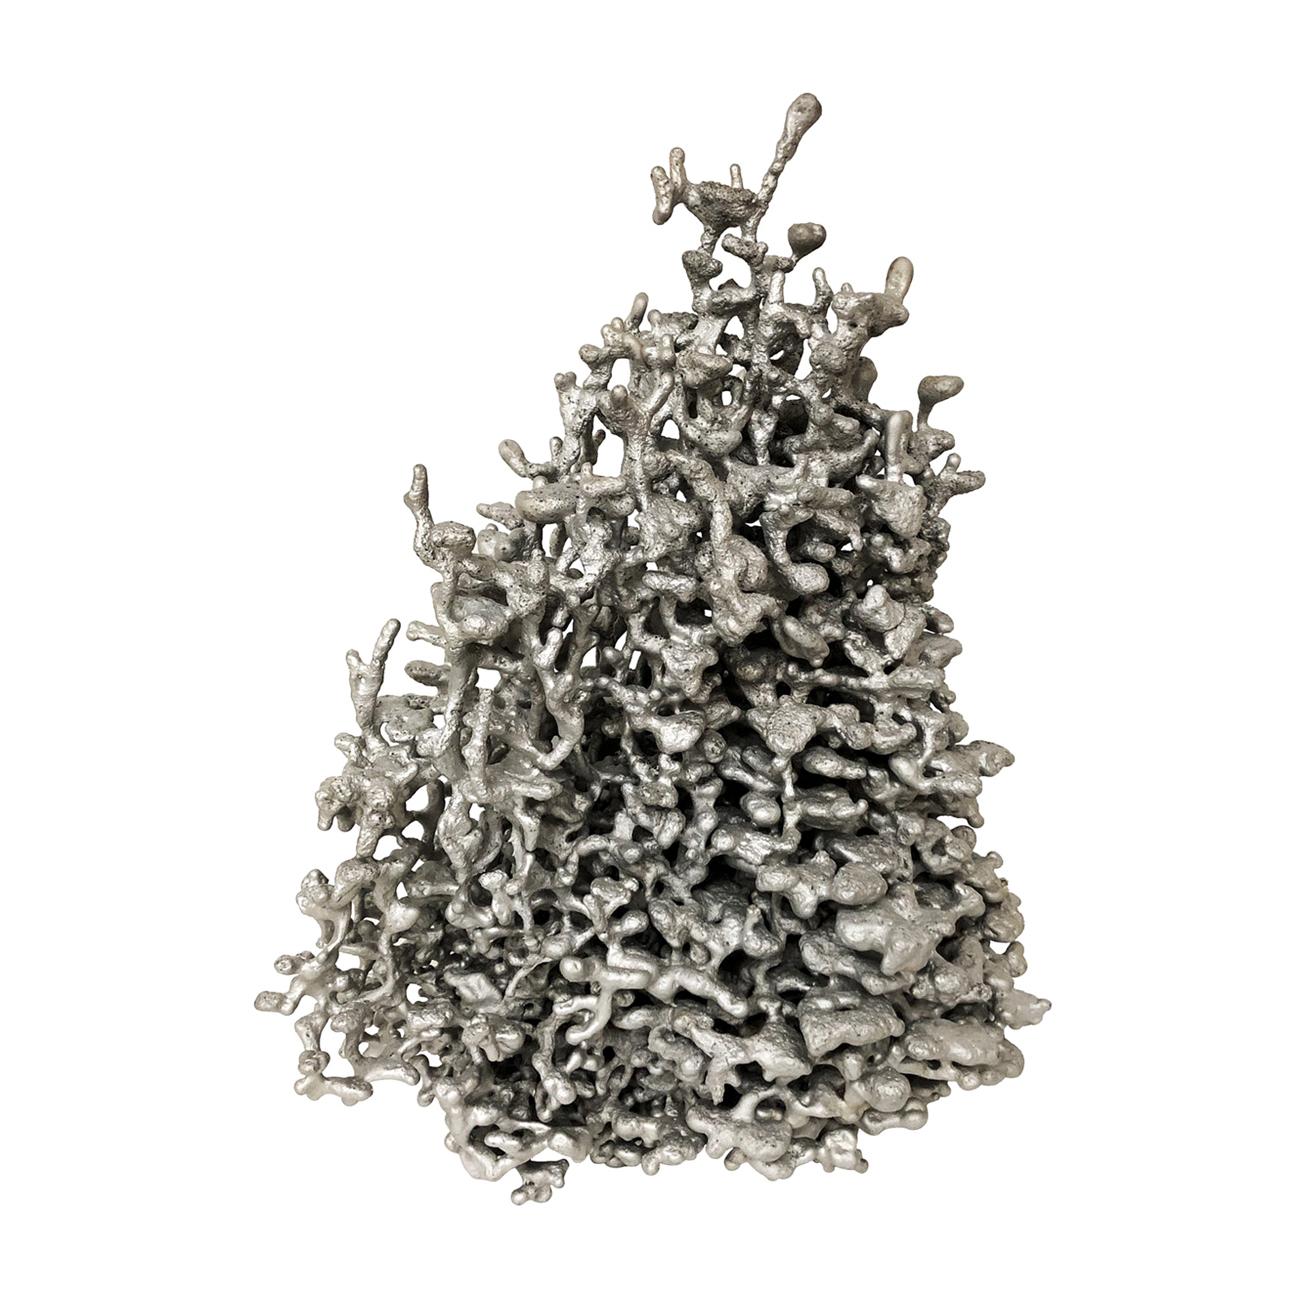 1970s Aluminum Spill Cast Sculpture For Sale